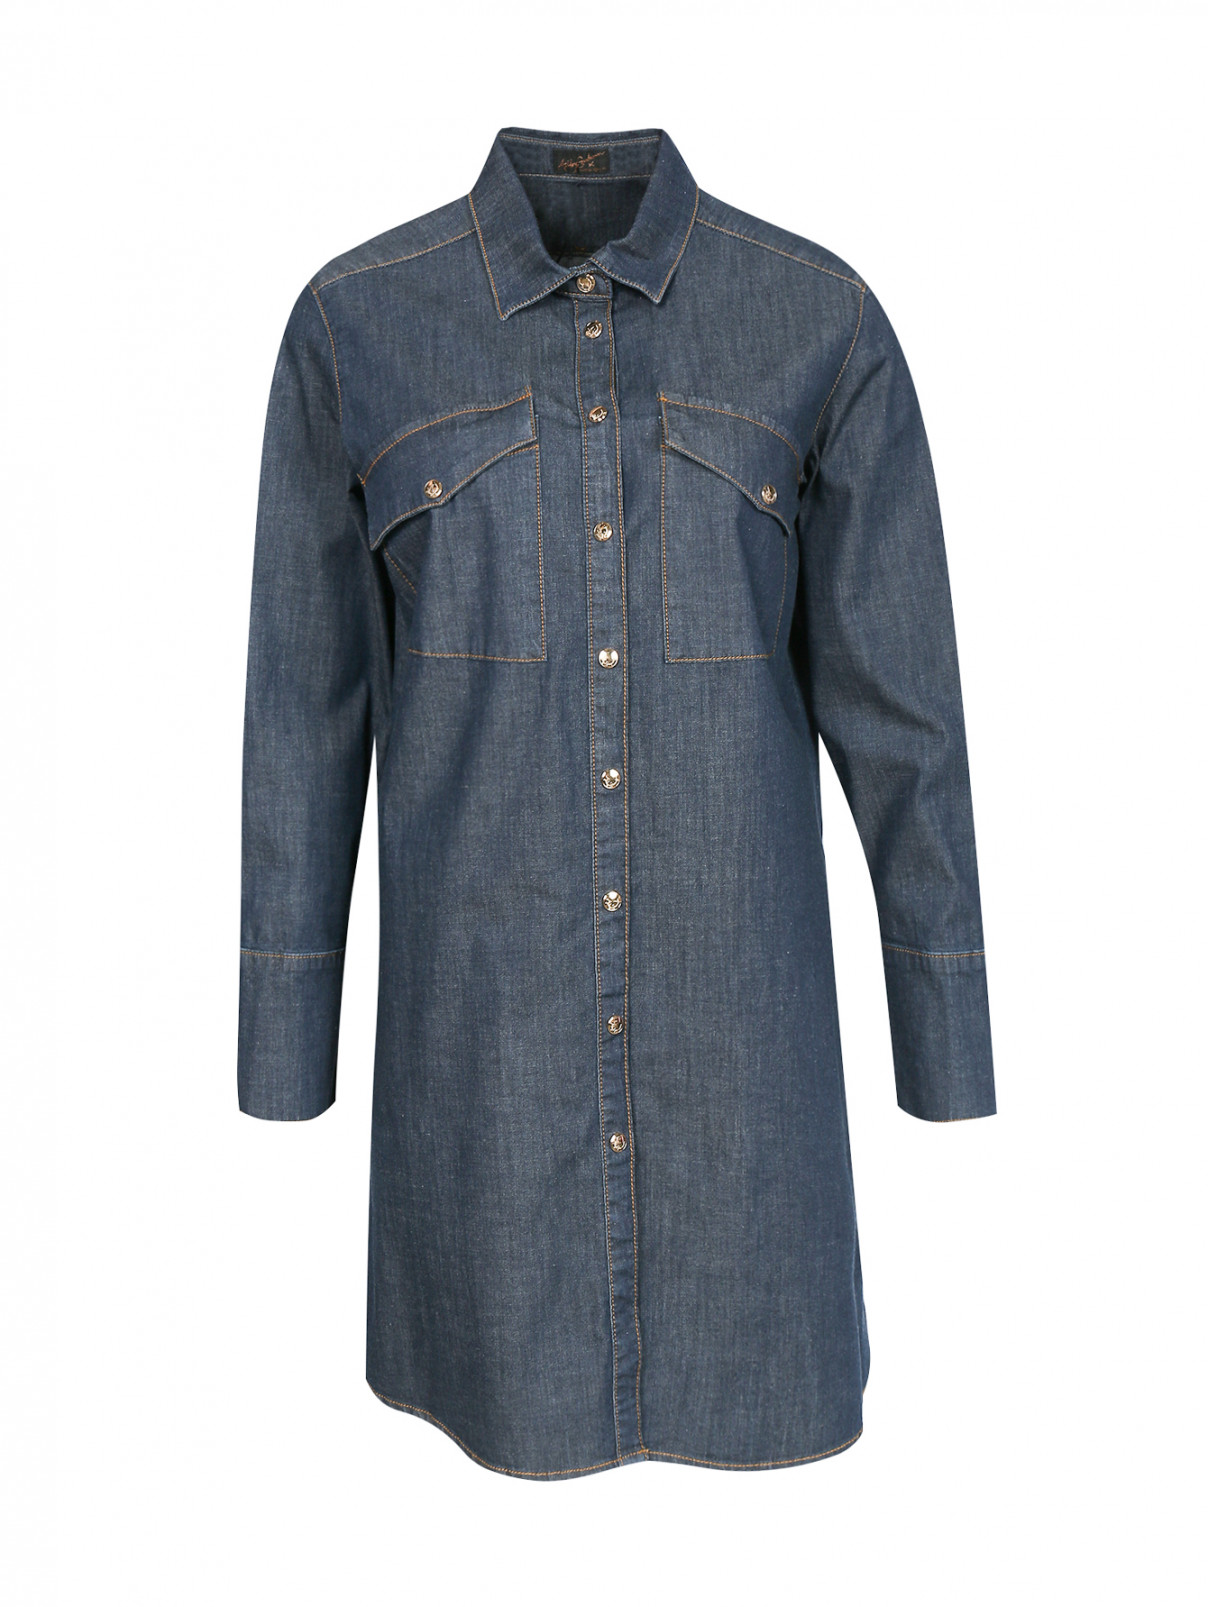 Удлиненная рубашка из денима Ashley Graham x Marina Rinaldi  –  Общий вид  – Цвет:  Синий